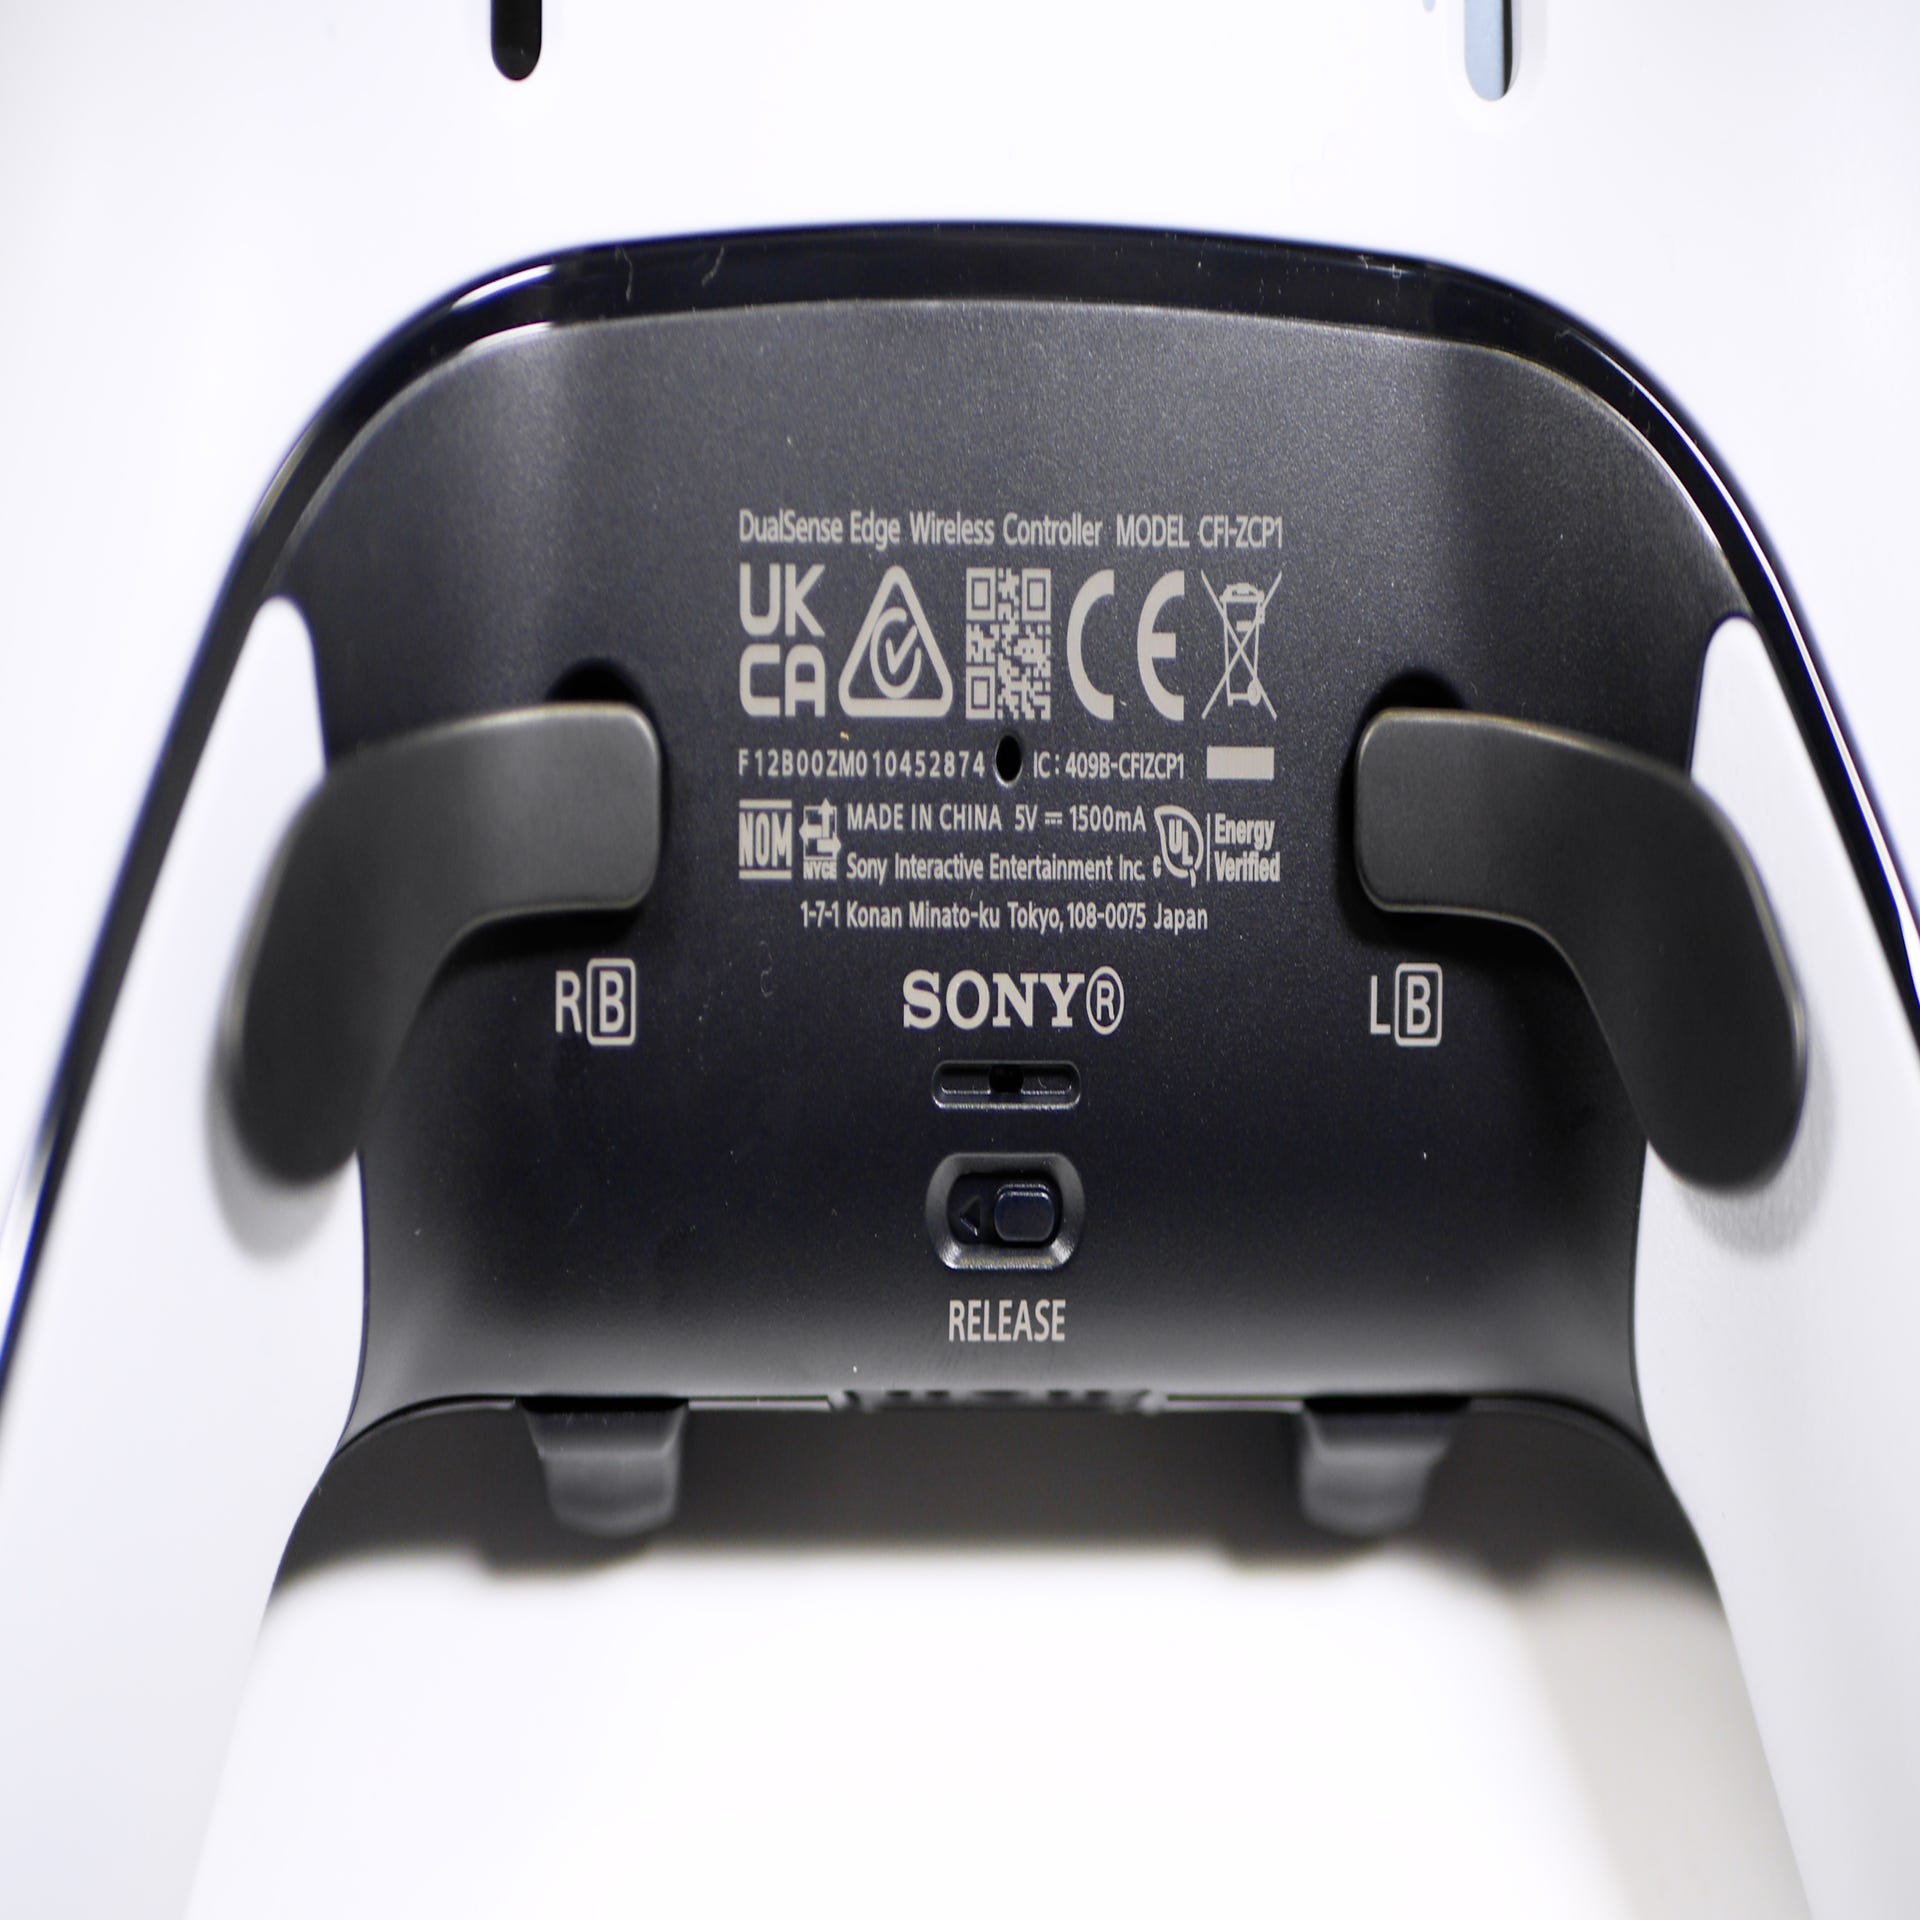 PS5 DualSense Edge controller review